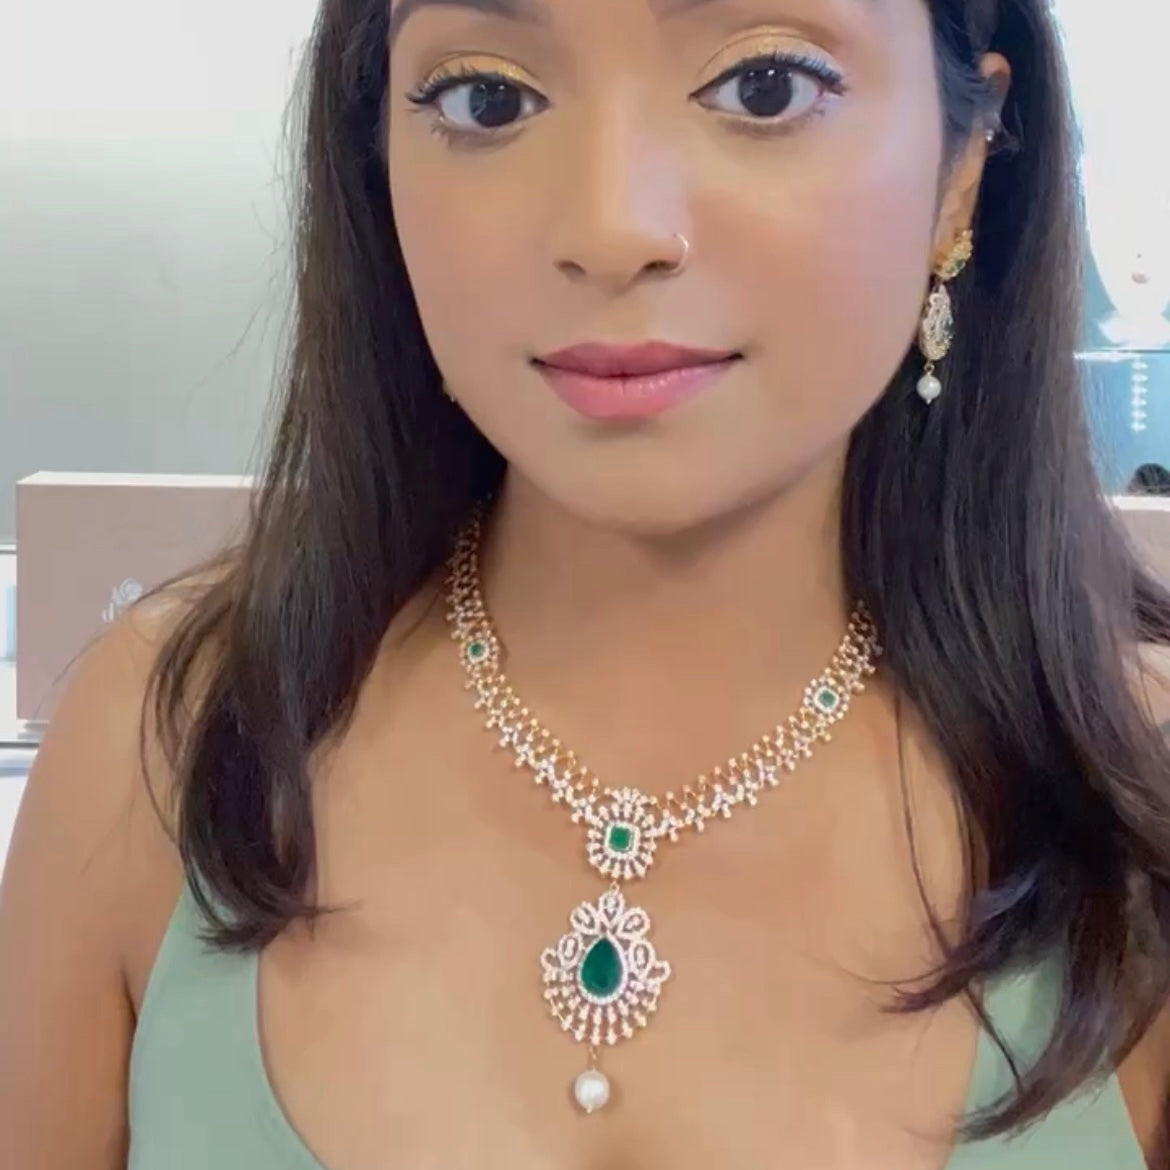 Glitzy Cubic Zarconia Necklace Set with Eccentric Emerald Colored Stones